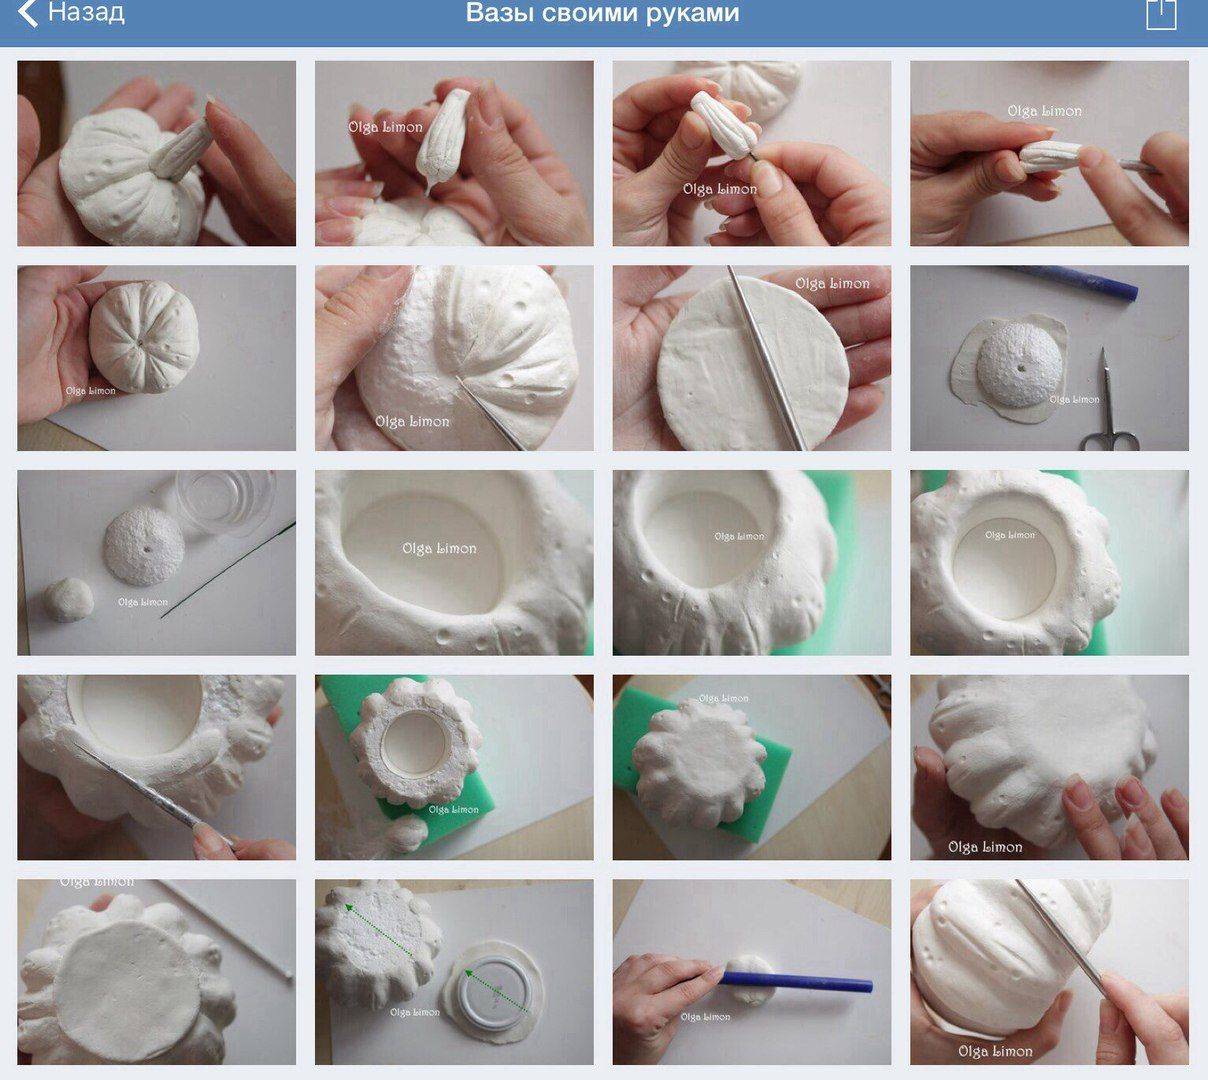 Как размочить глину для лепки в домашних условиях, размягчить и подготовить пластику